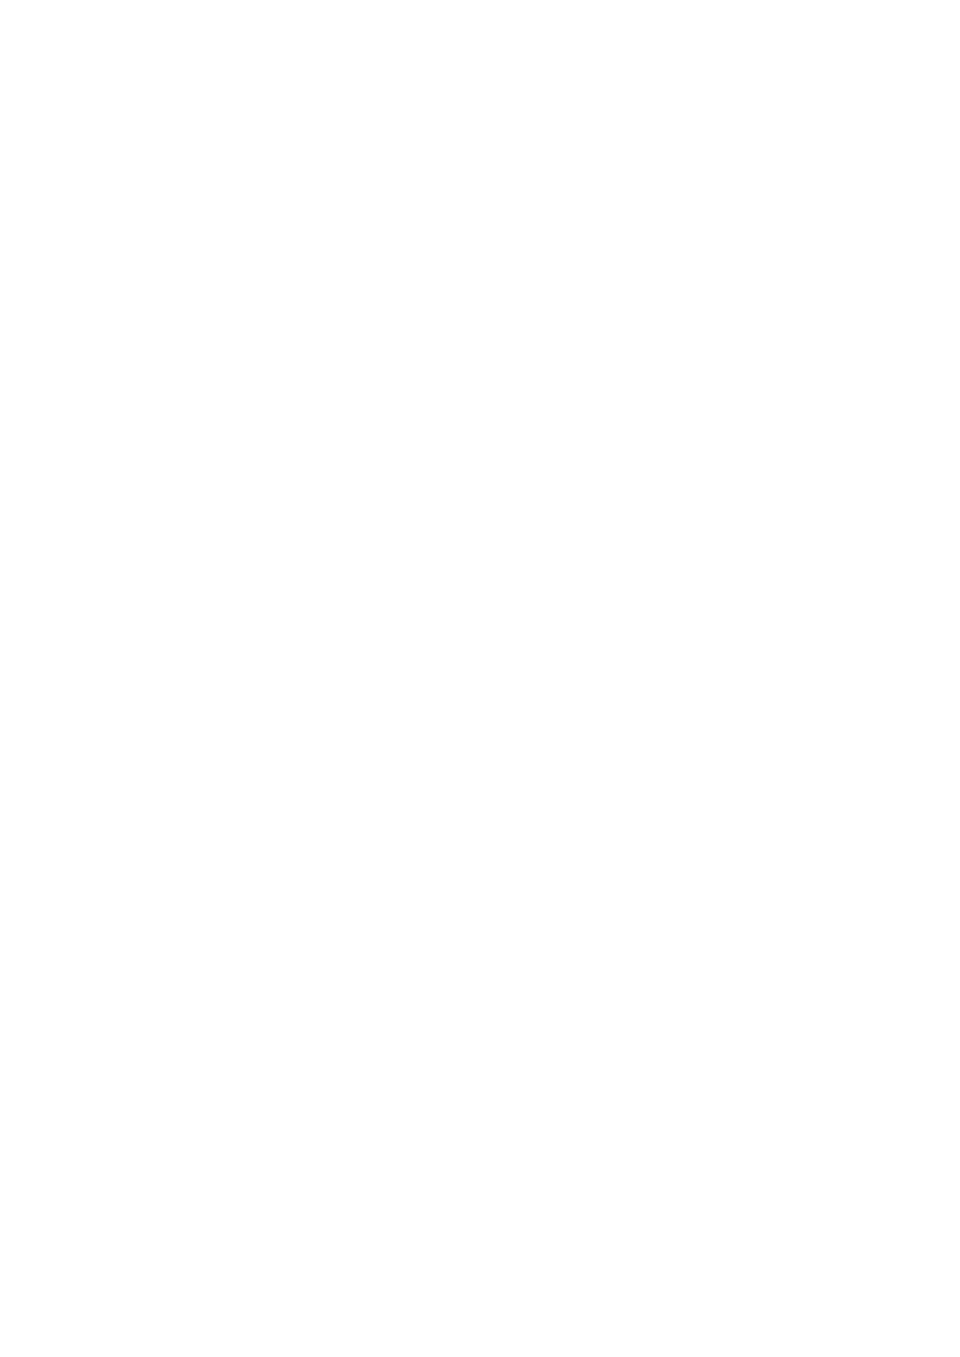 75/19 Tulibowo, gmina Dobrzyń nad Wisłą, powiat Lipnowski, woj. Kujawsko-Pomorskie INWESTOR : Agencja Nieruchomości Rolnych ADRES INWESTORA : ul.